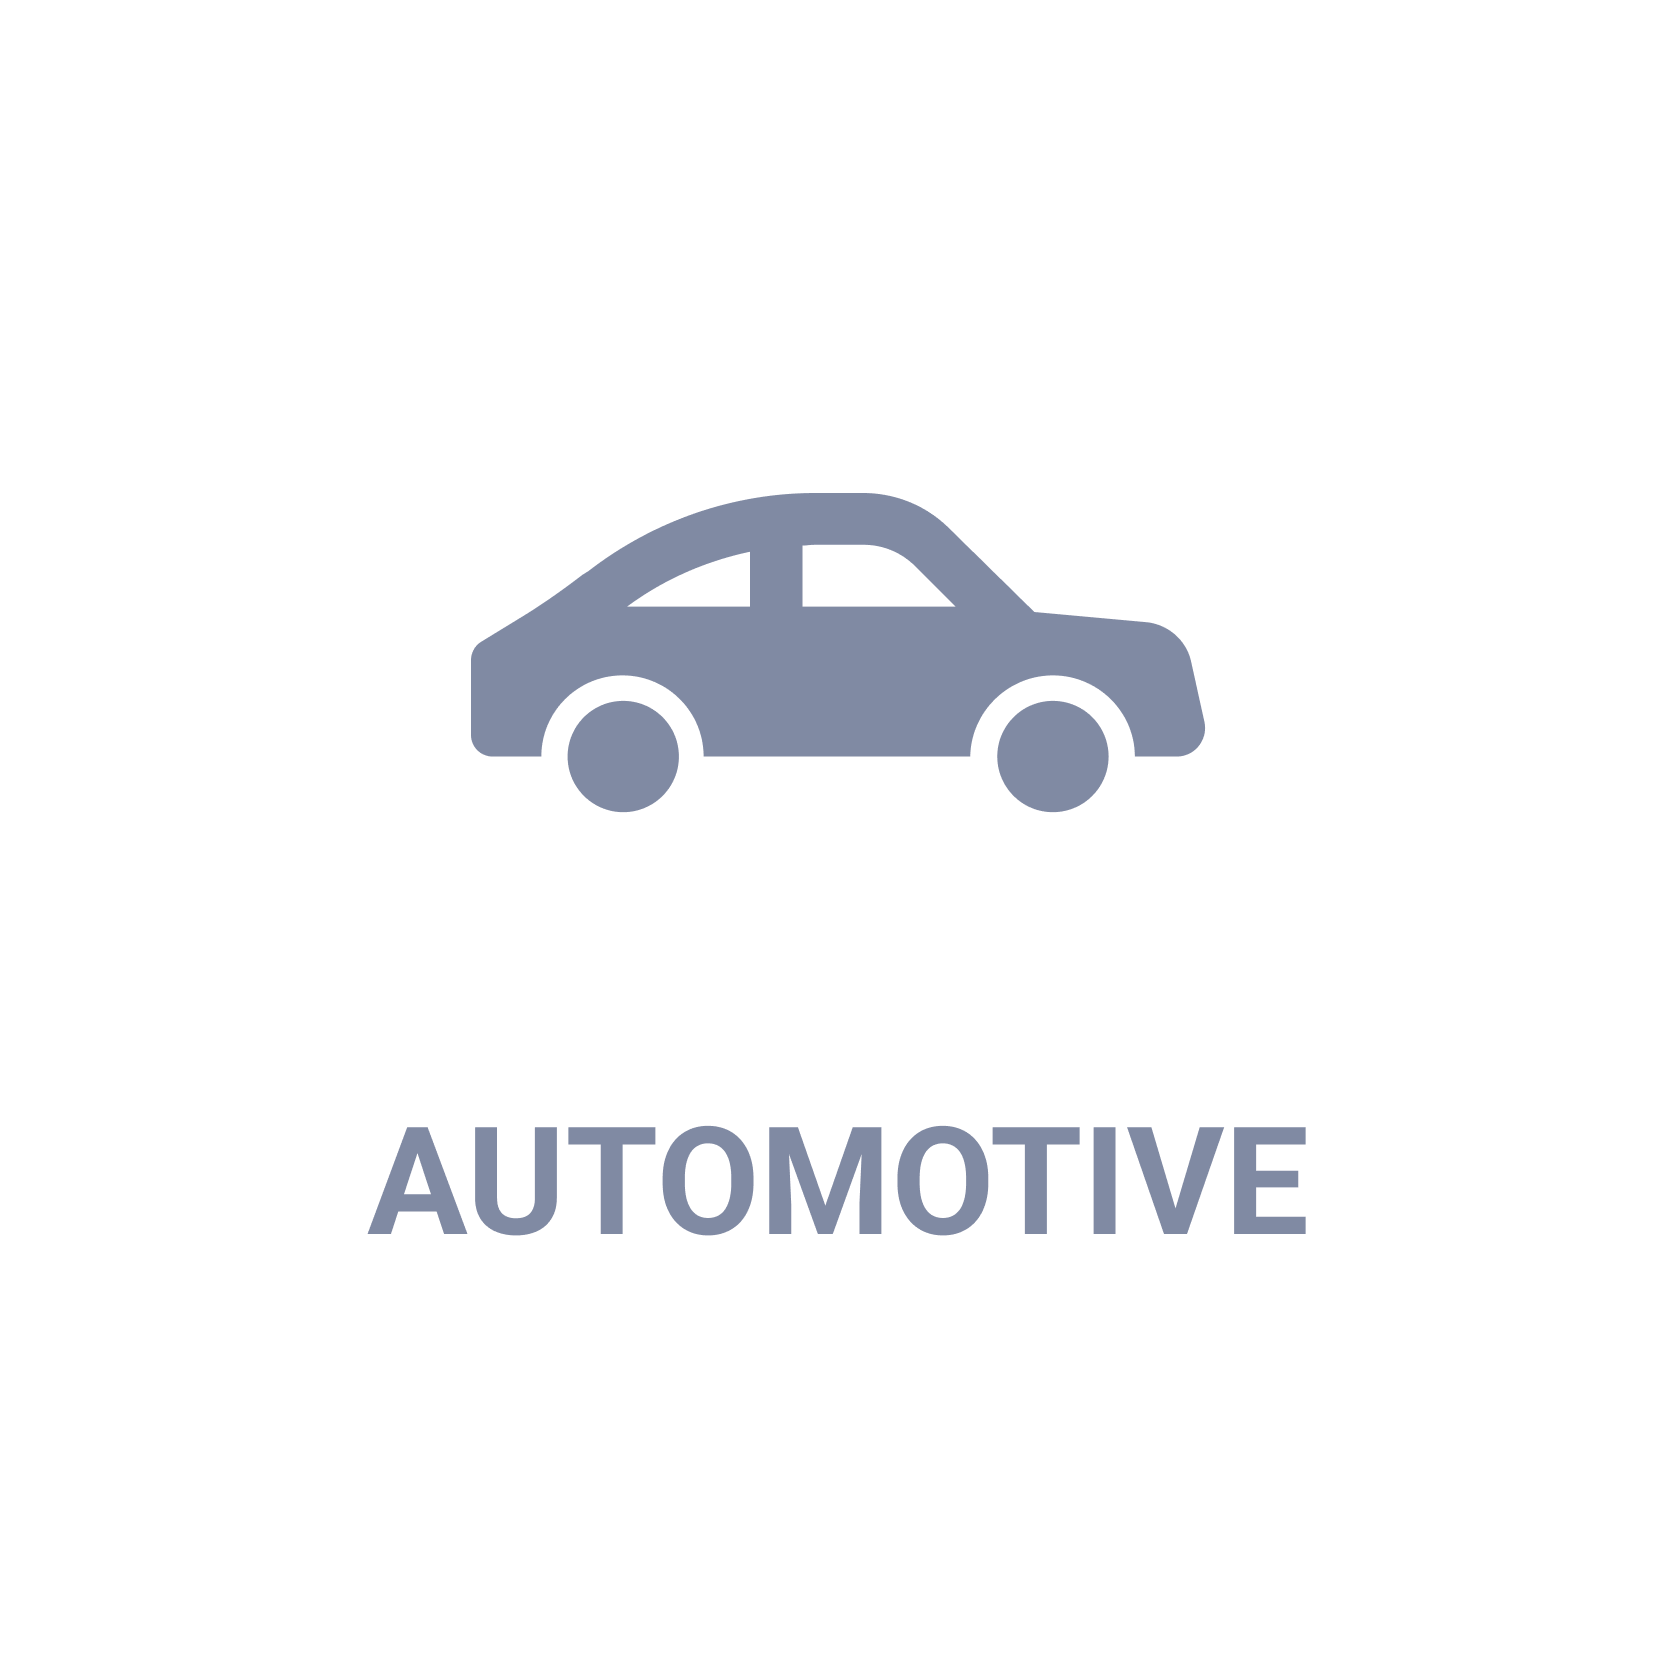 IT Governance industry Automotive